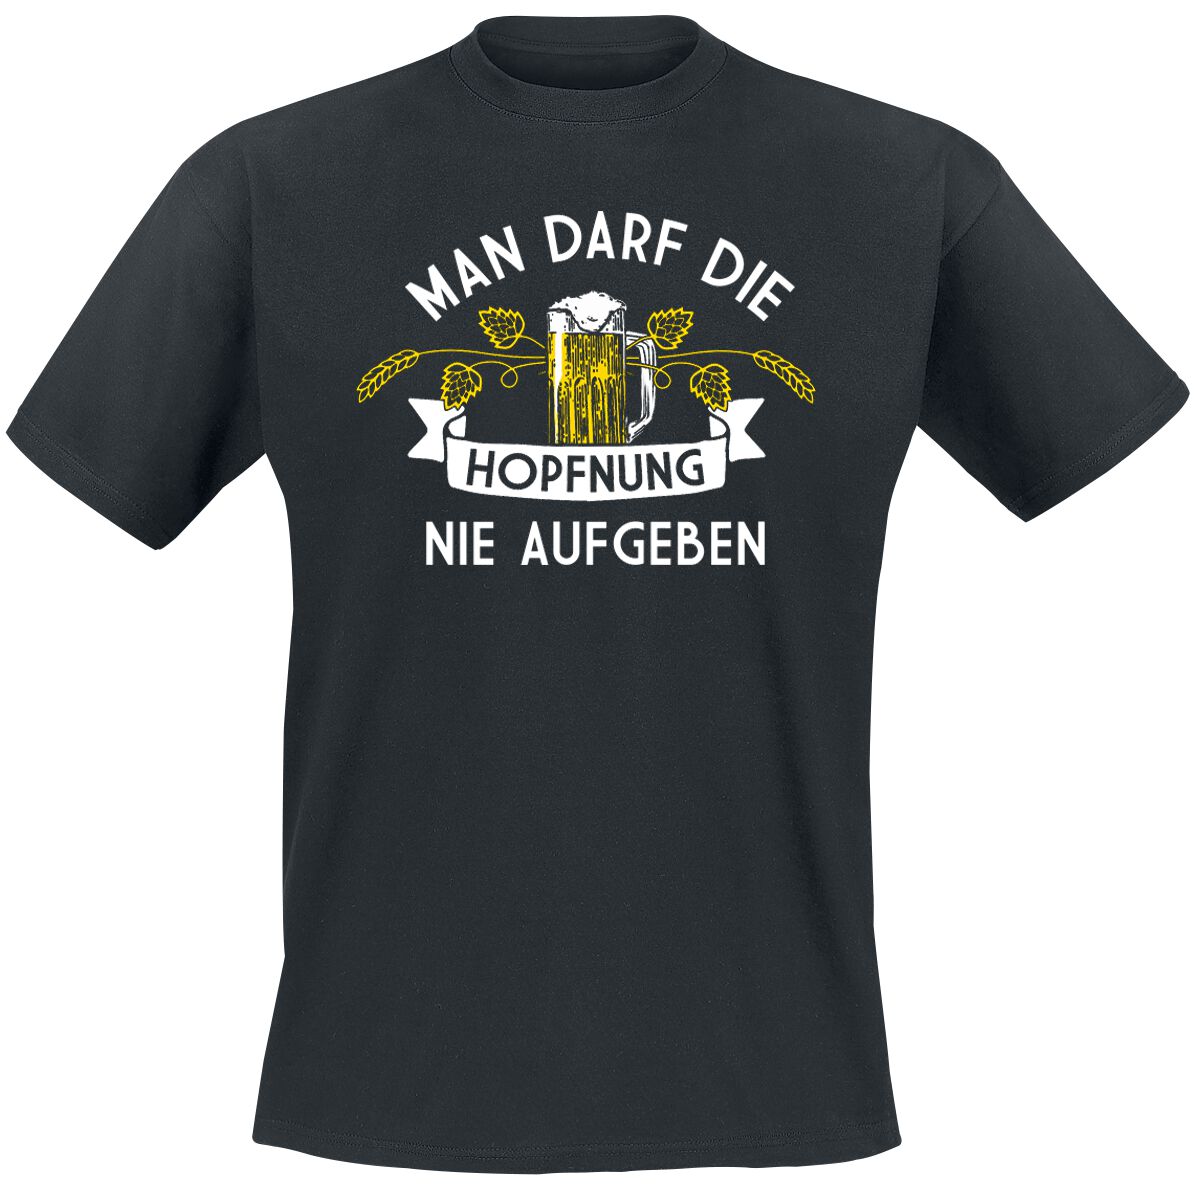 Alkohol & Party T-Shirt - Man darf die Hopfnung nie aufgeben - M bis 5XL - für Männer - Größe XL - schwarz